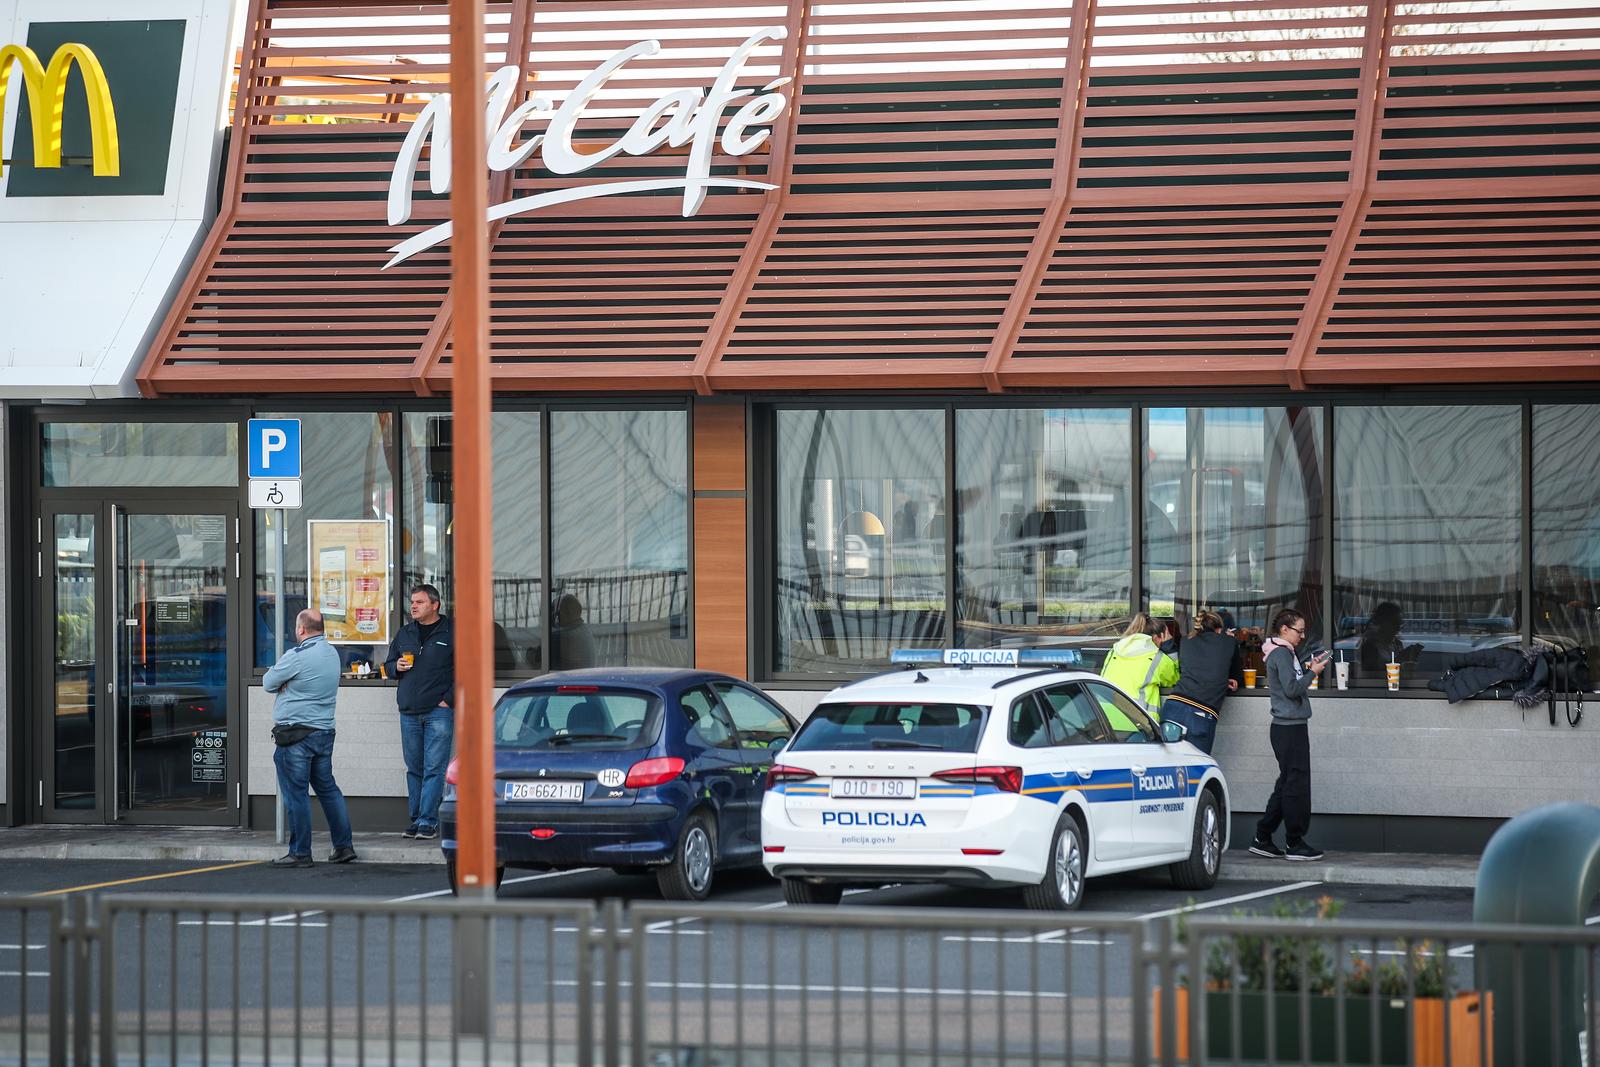 20.10.2022., Zagreb - Policija ispred McDonaldsapored Z centra na Ljubljanskoj provjerava dojavu koja je upucena mailom na vise medijskih redakcija, a dojavljeno je da je u objekt postavljena eksplozivna naprava. Dojava o bombi upucena je na pet lokacija u Zagrebu - zracnoj luci, dvije policijske postaje te dva McDonaldsa. Photo: Slavko Midzor/PIXSELL